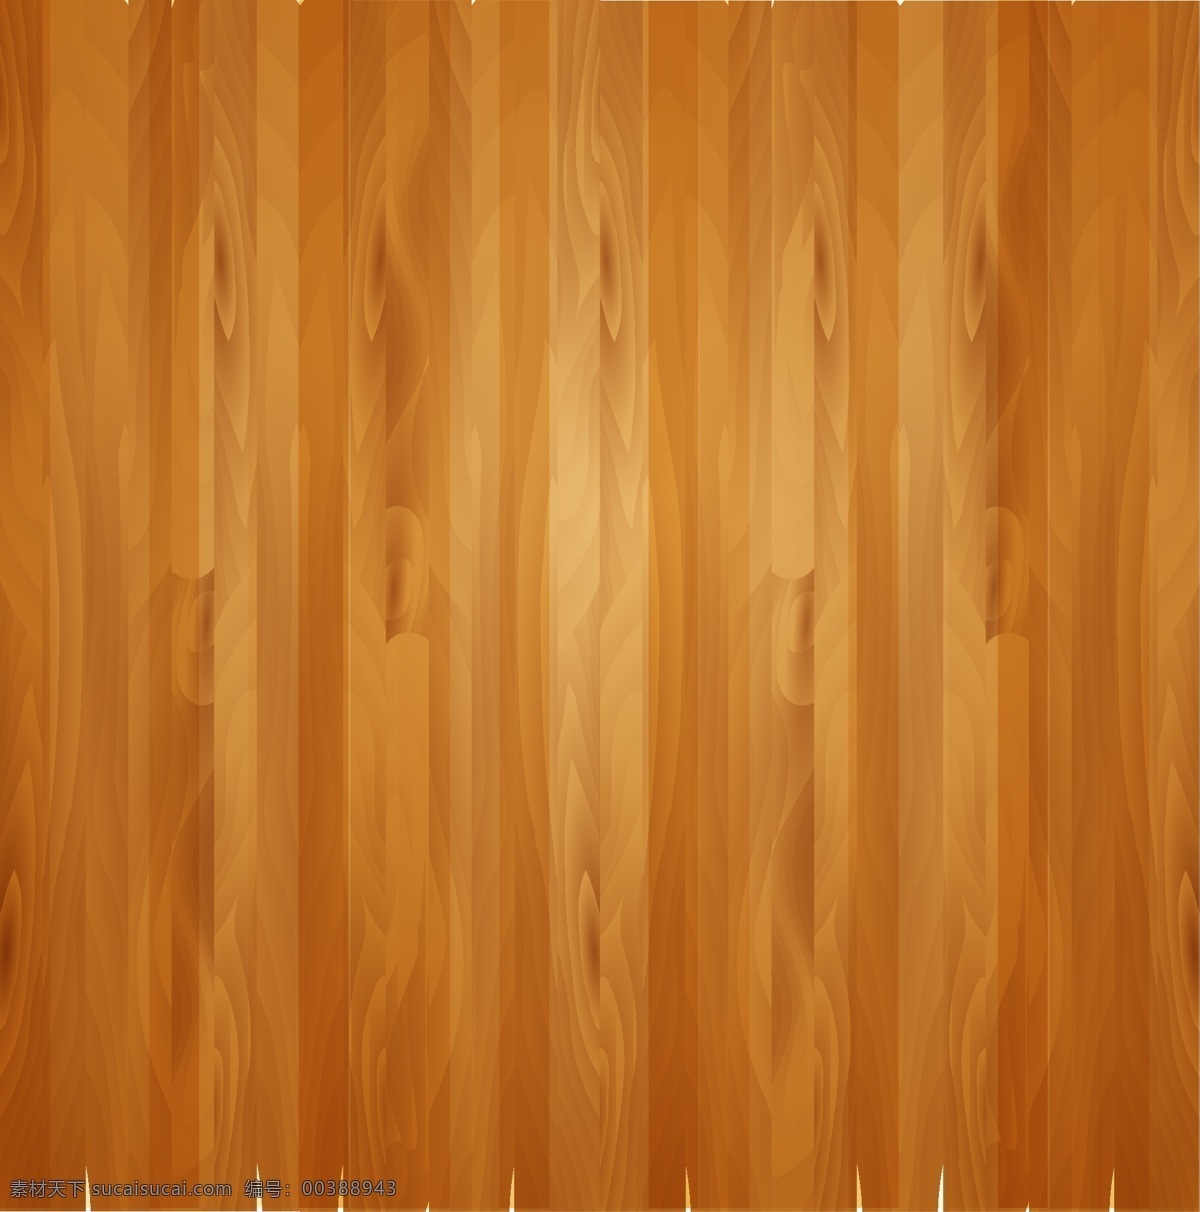 木质效果 木纹 木质 地板 拼地板 木 共享杂项 底纹边框 背景底纹